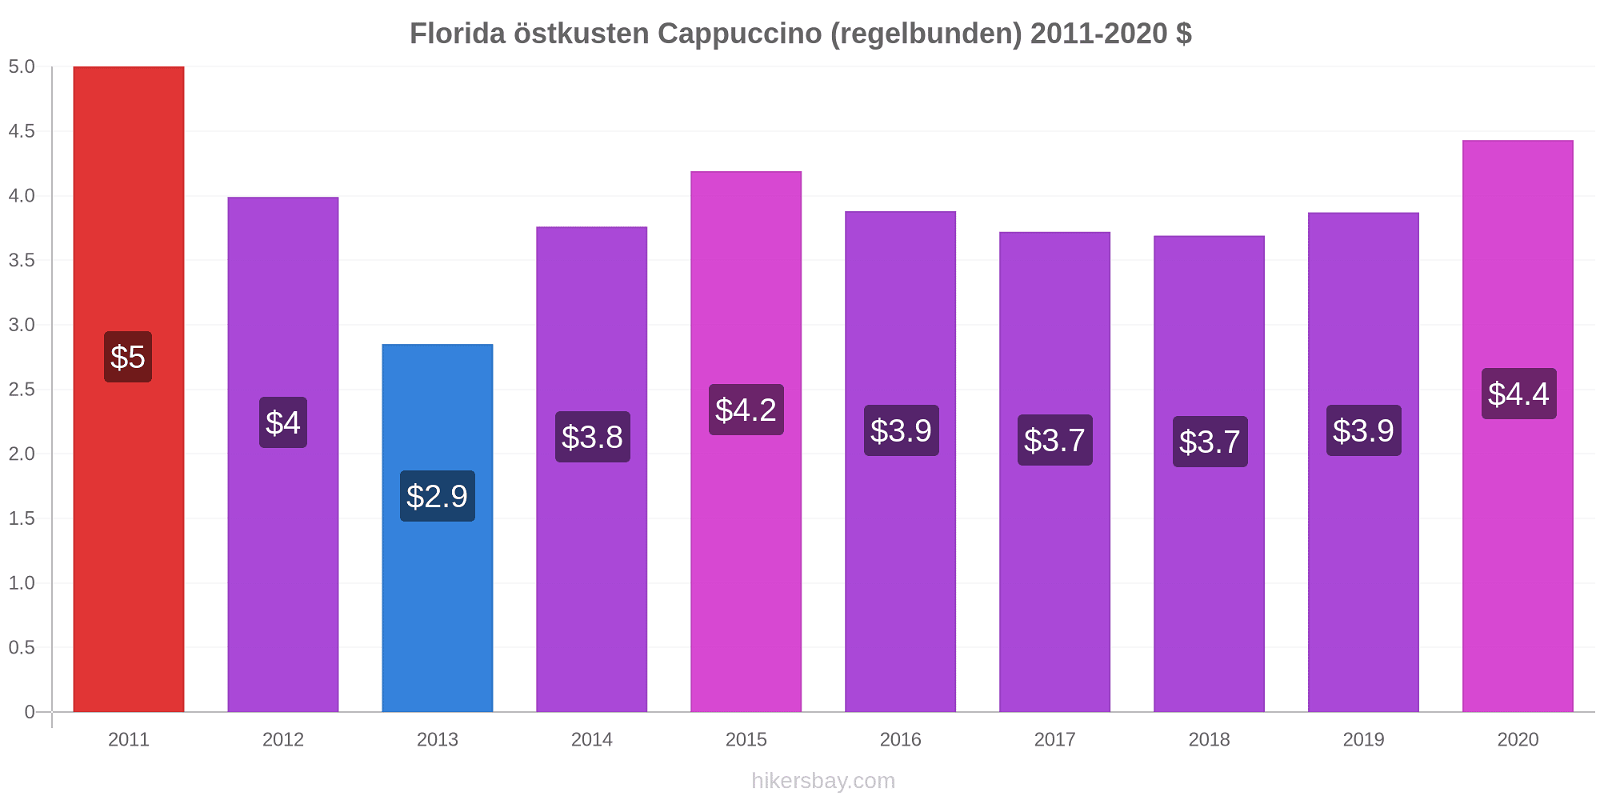 Florida östkusten prisförändringar Cappuccino (regelbunden) hikersbay.com